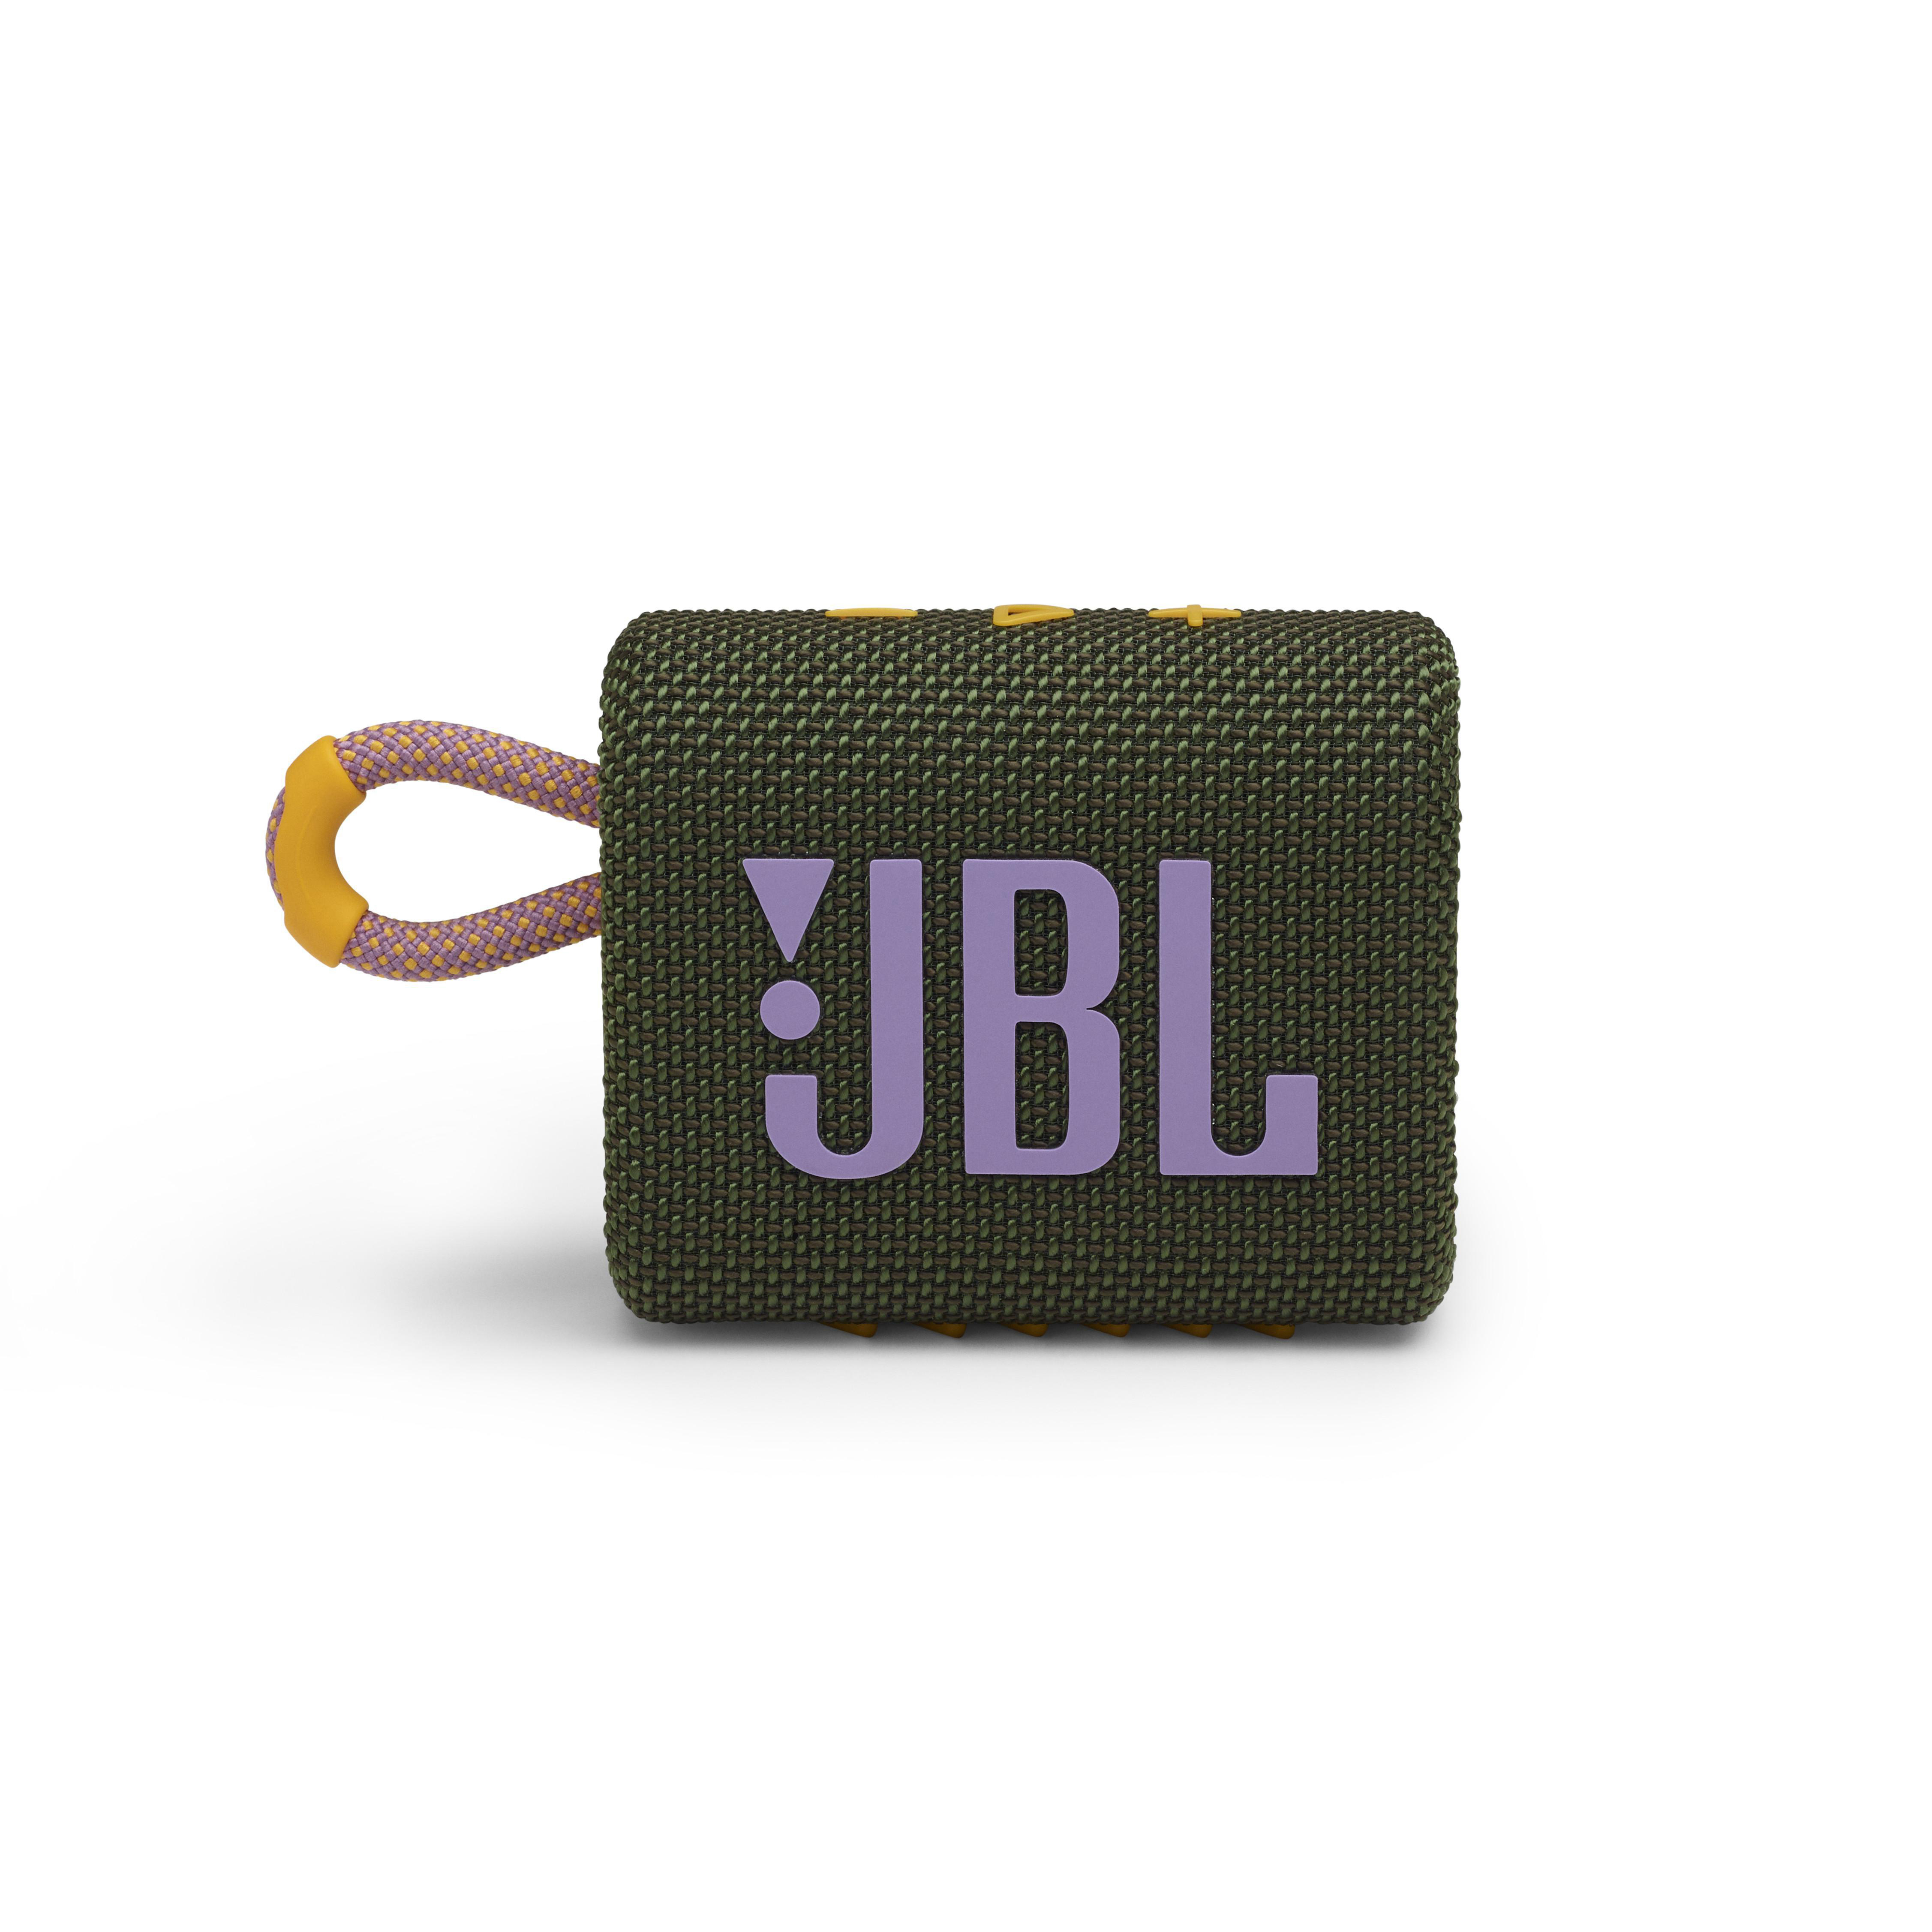 JBL GO3 Bluetooth Lautsprecher, Grün